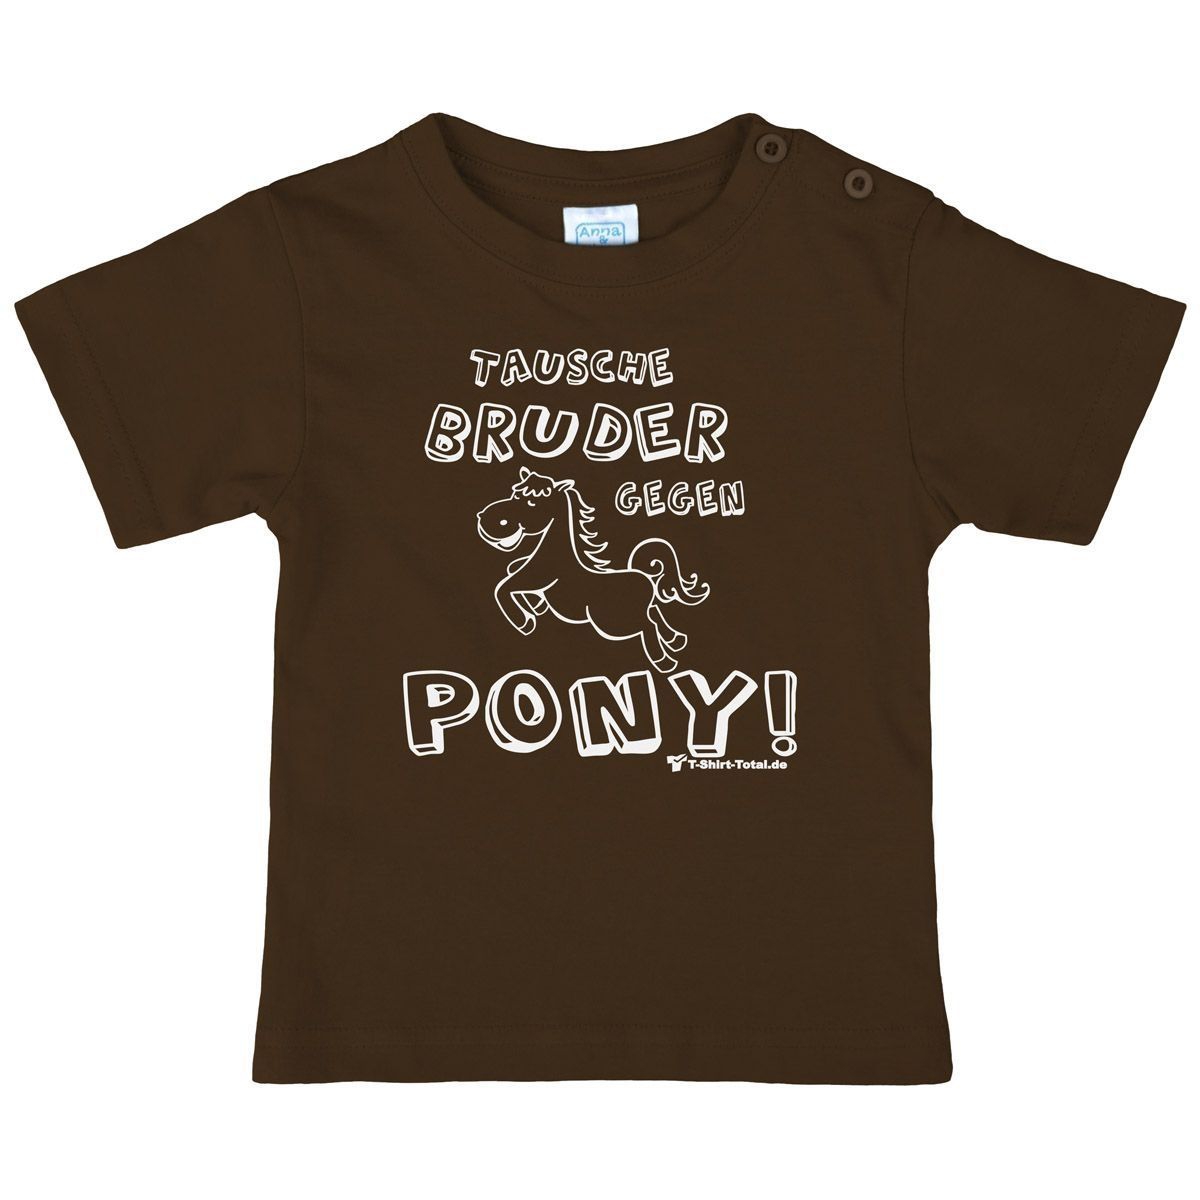 Tausche Bruder gegen Pony Kinder T-Shirt braun 80 / 86